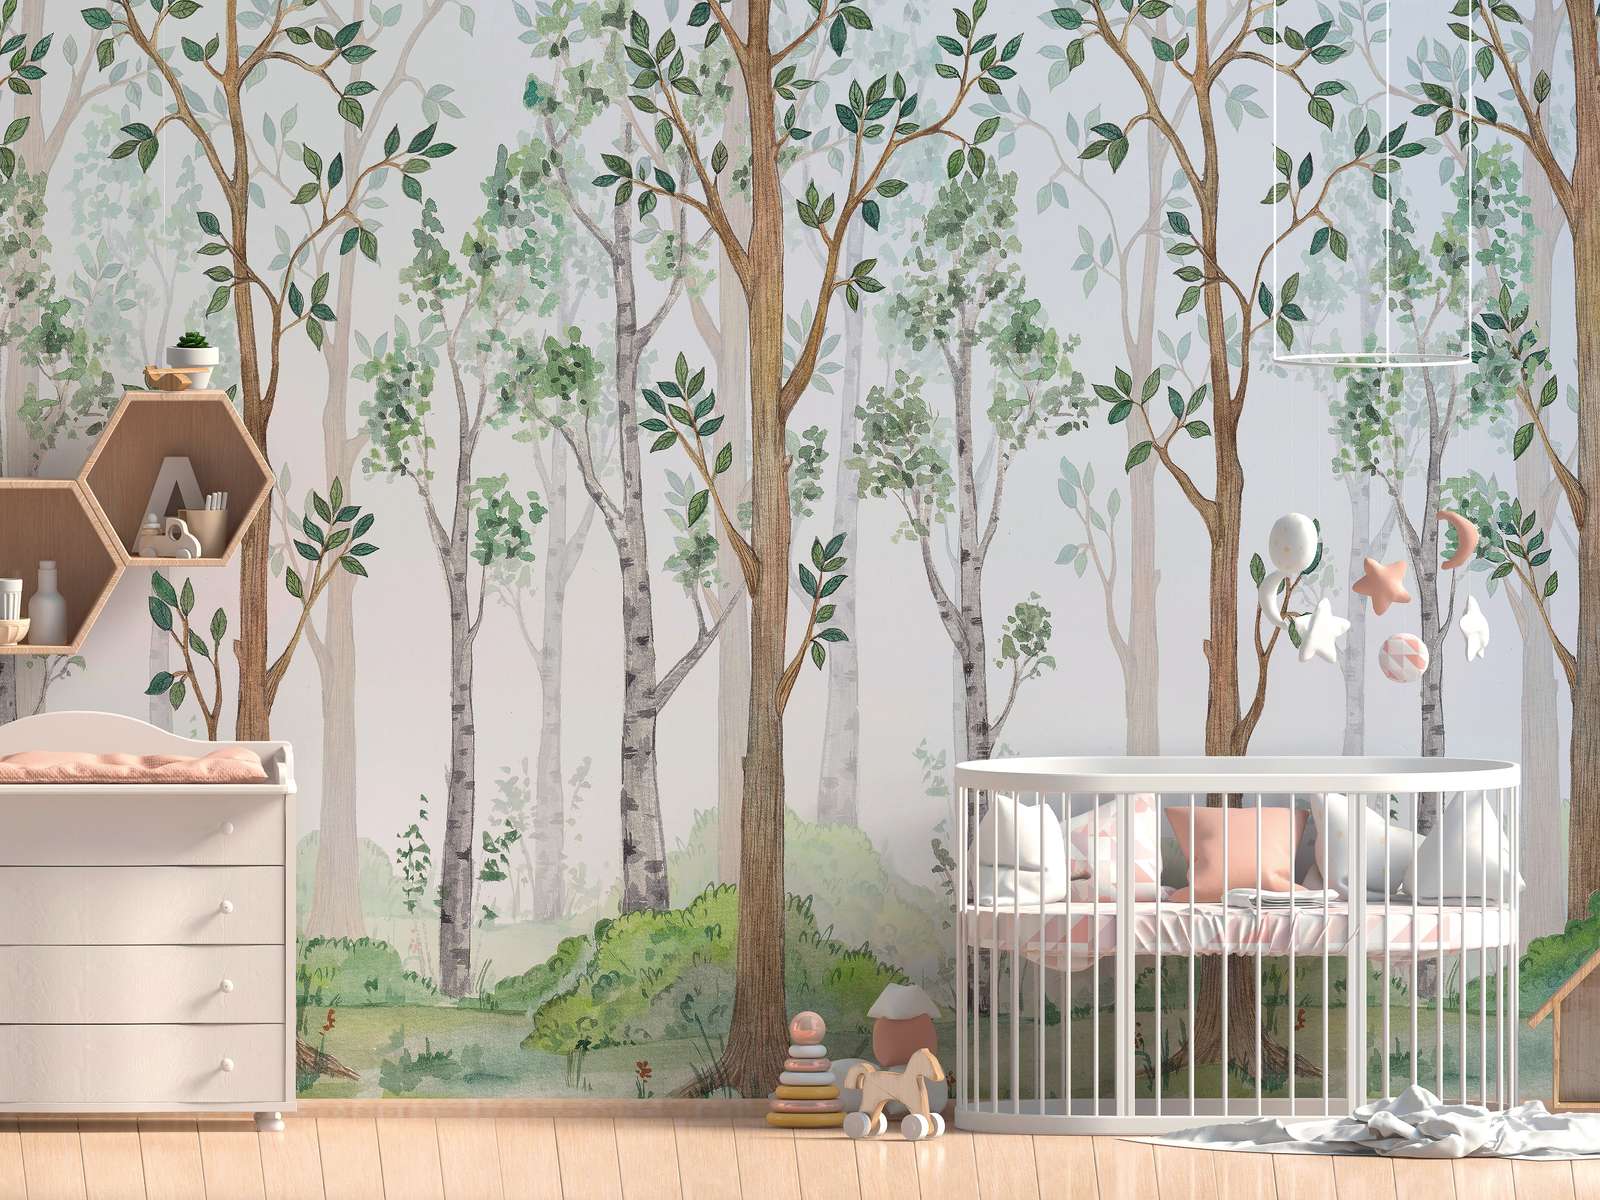             Papier peint avec forêt peinte pour chambre d'enfant - vert, marron, blanc
        